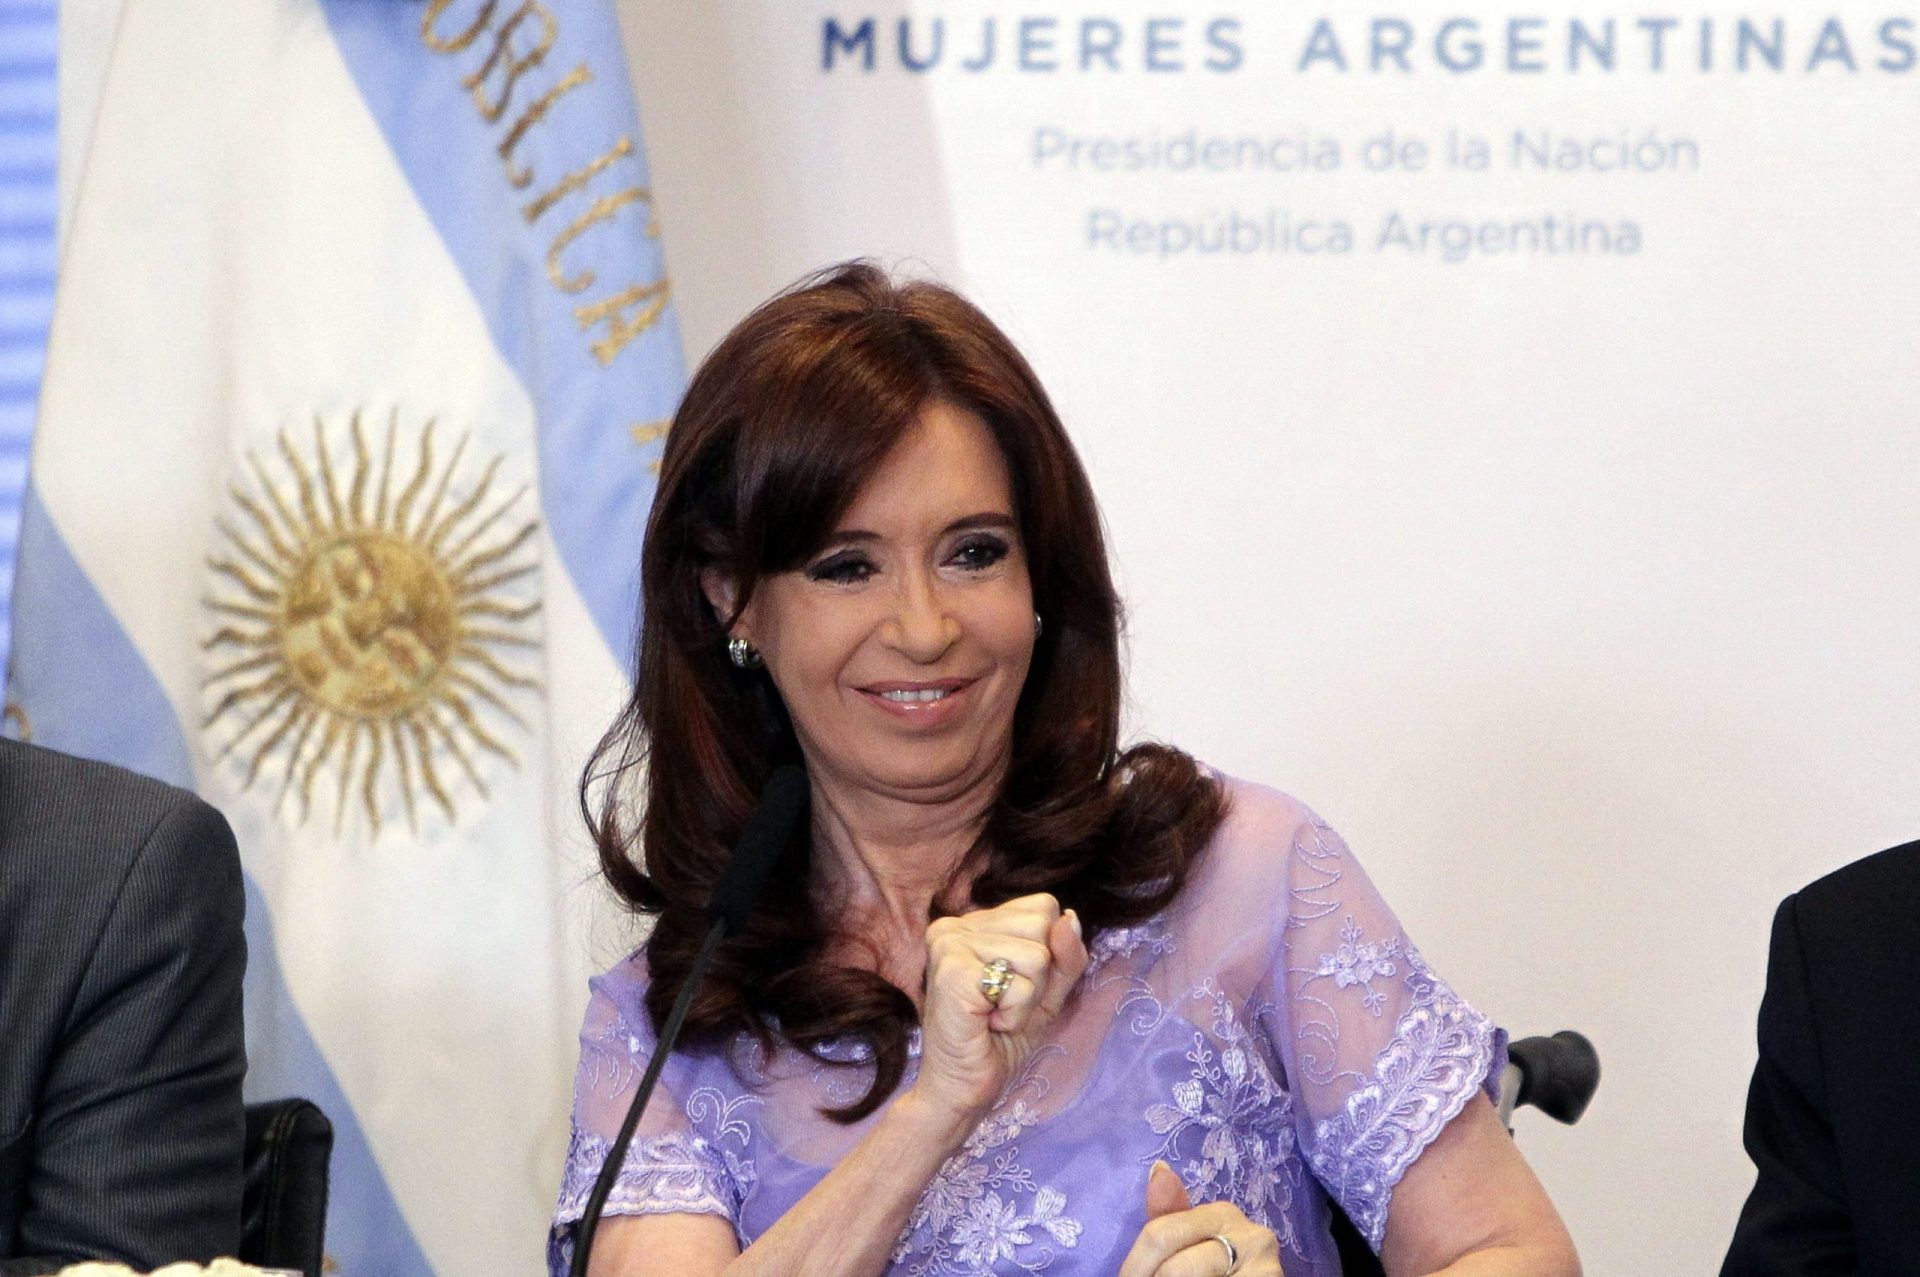 Argentina: Procurador morto estava a redigir mandado de detenção da Presidente